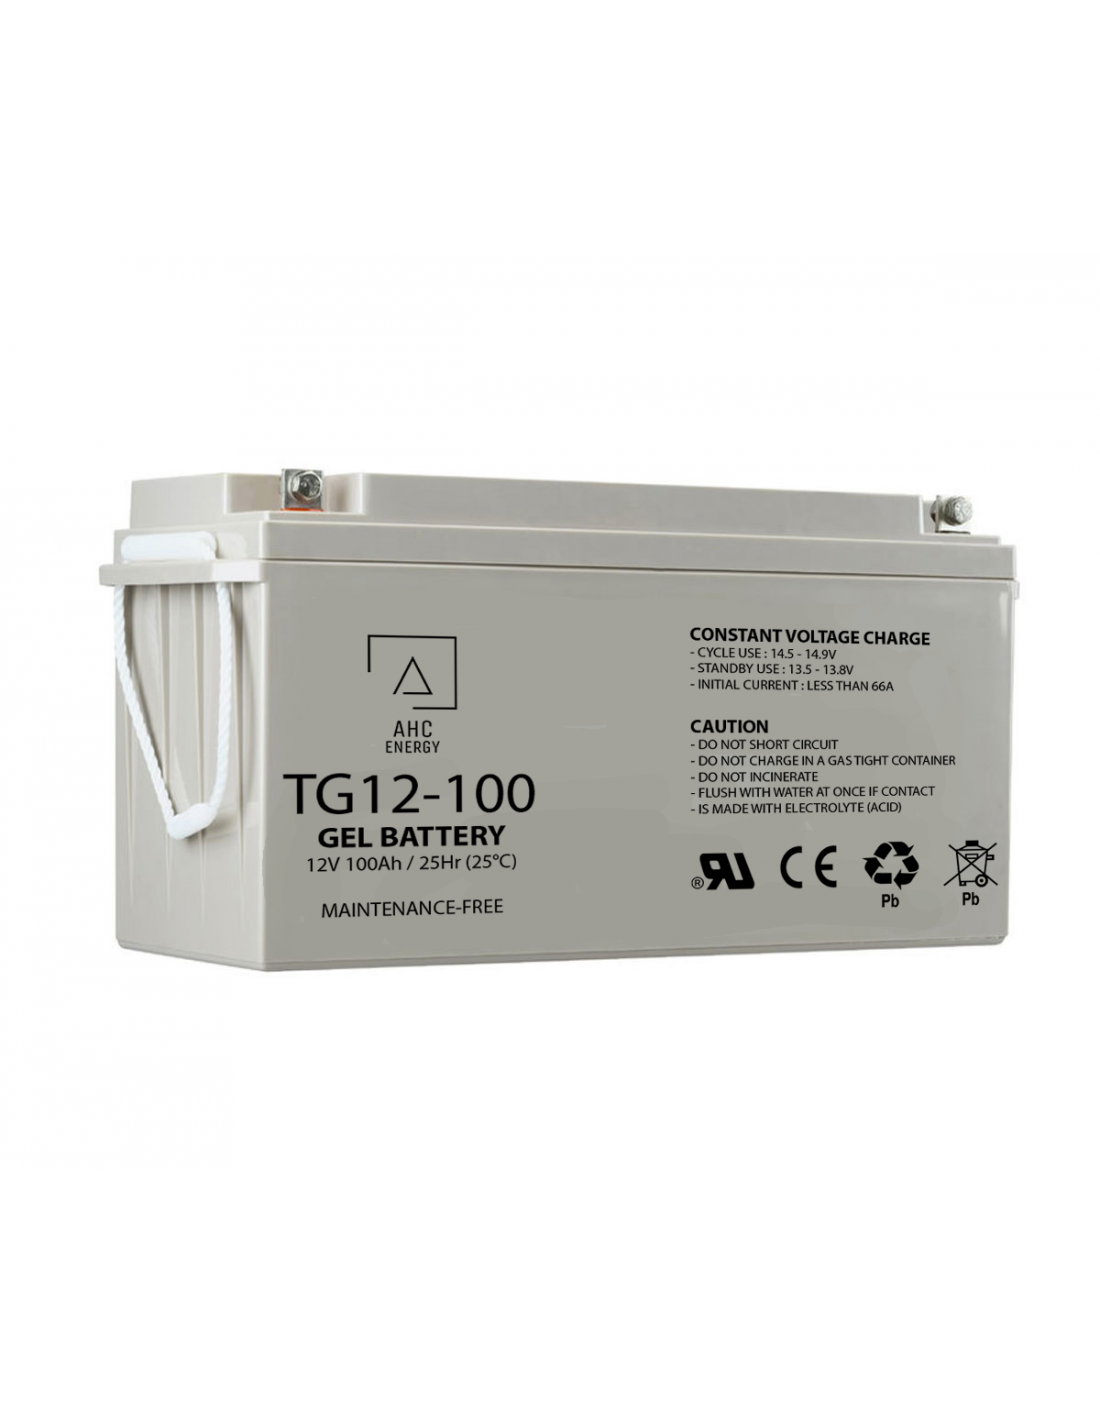 Batterie auxiliaire Gel 100Ah 496190